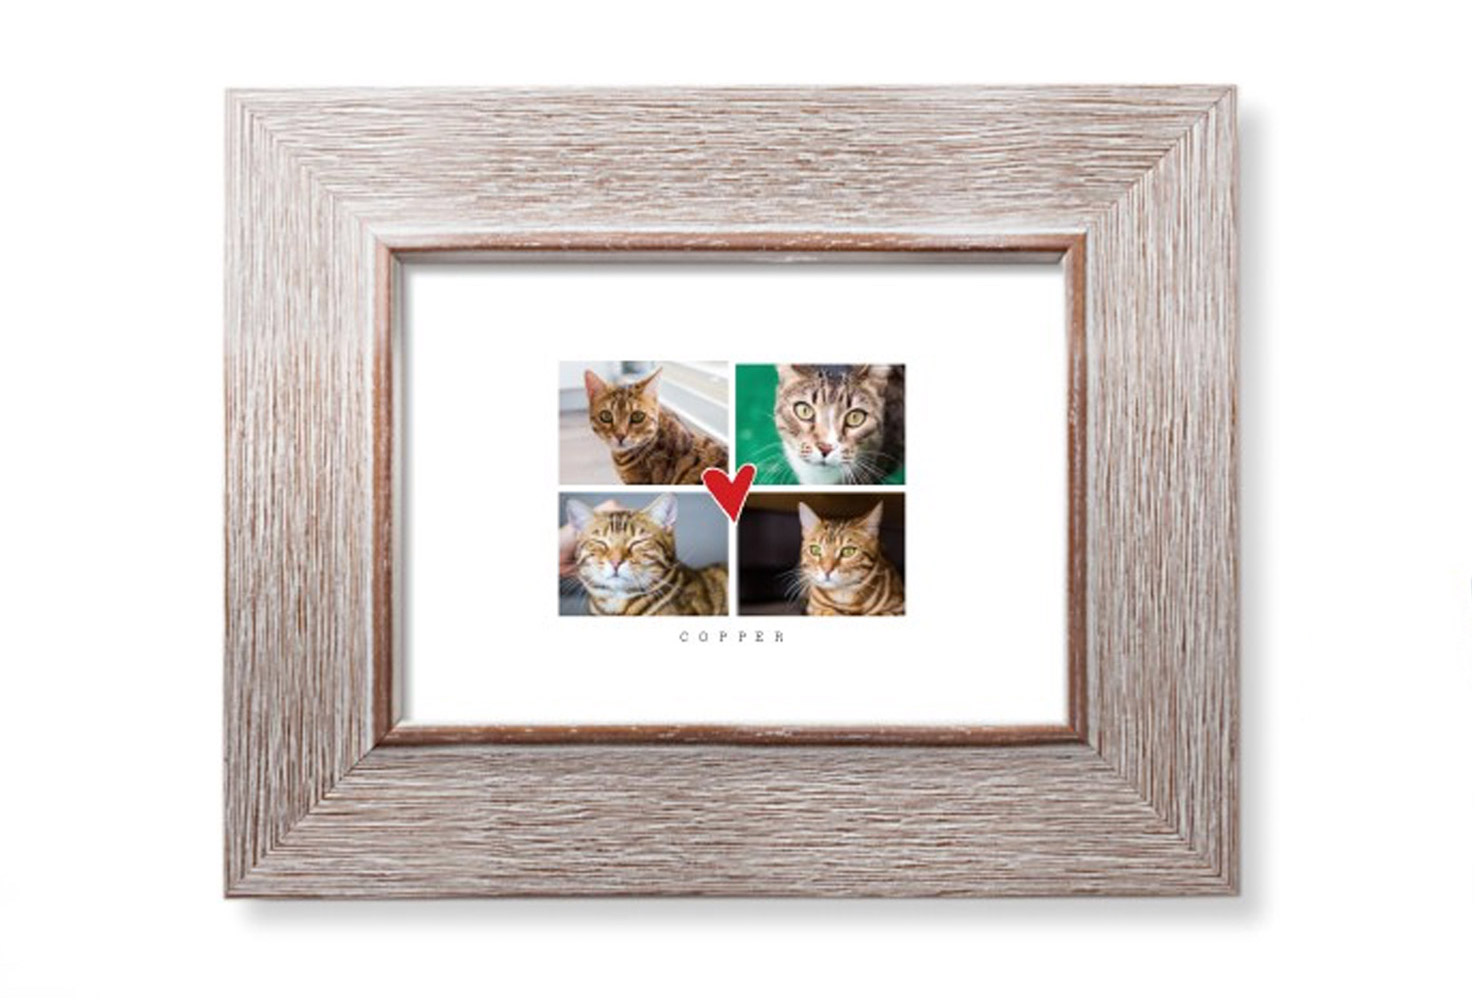 Framed cat photos.